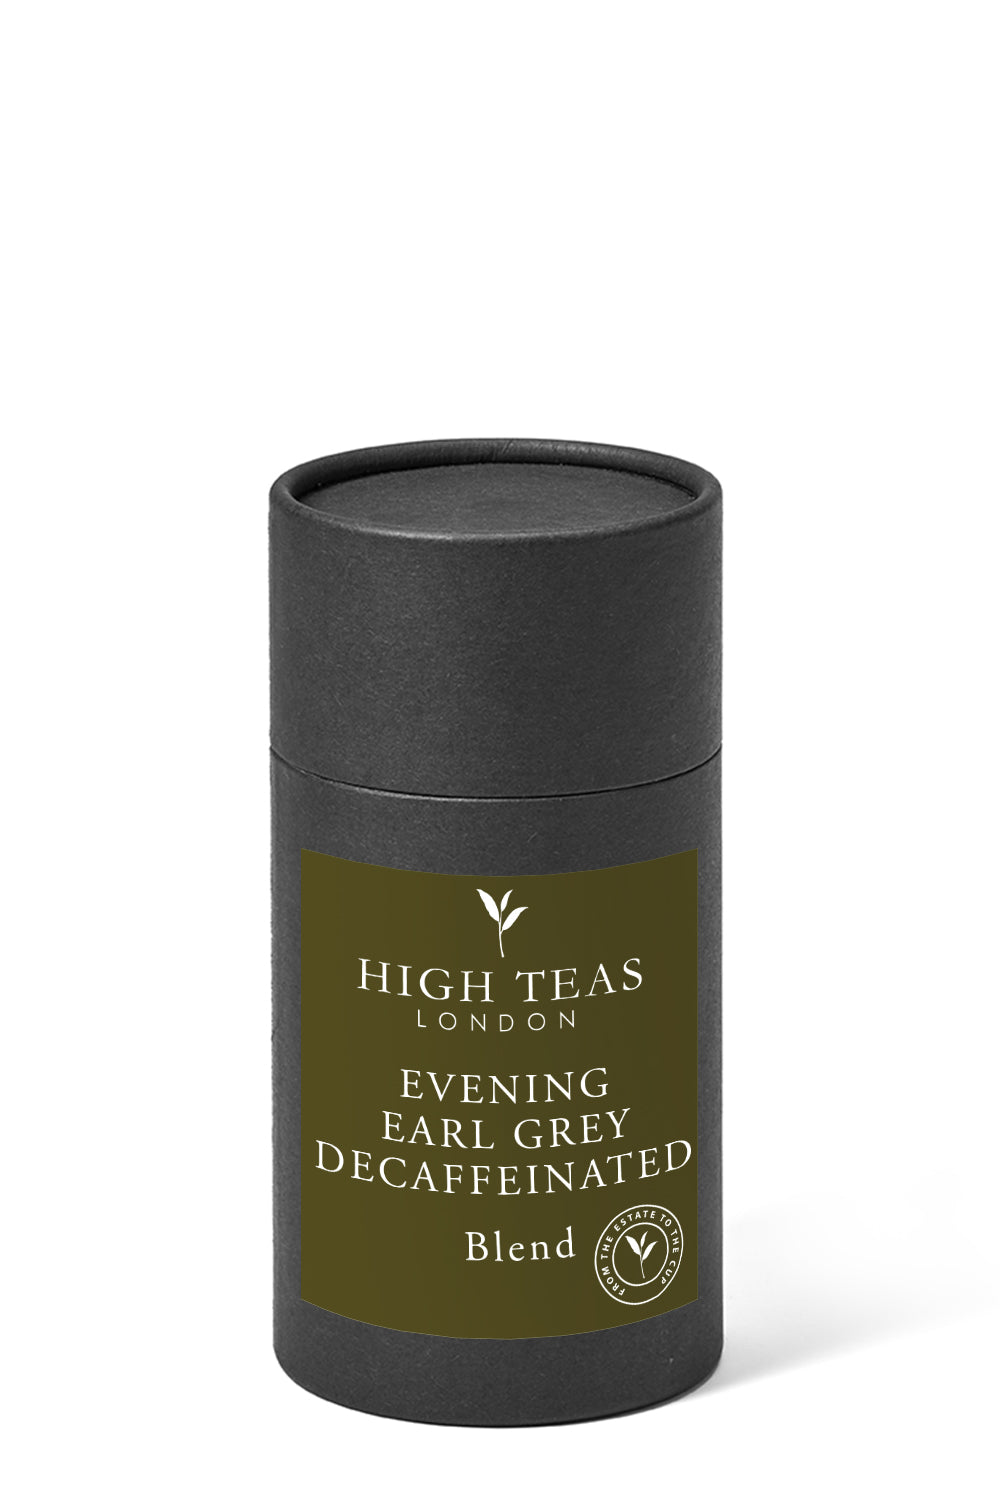 Evening Earl Grey Decaffeinated Leaf-60g gift-Loose Leaf Tea-High Teas